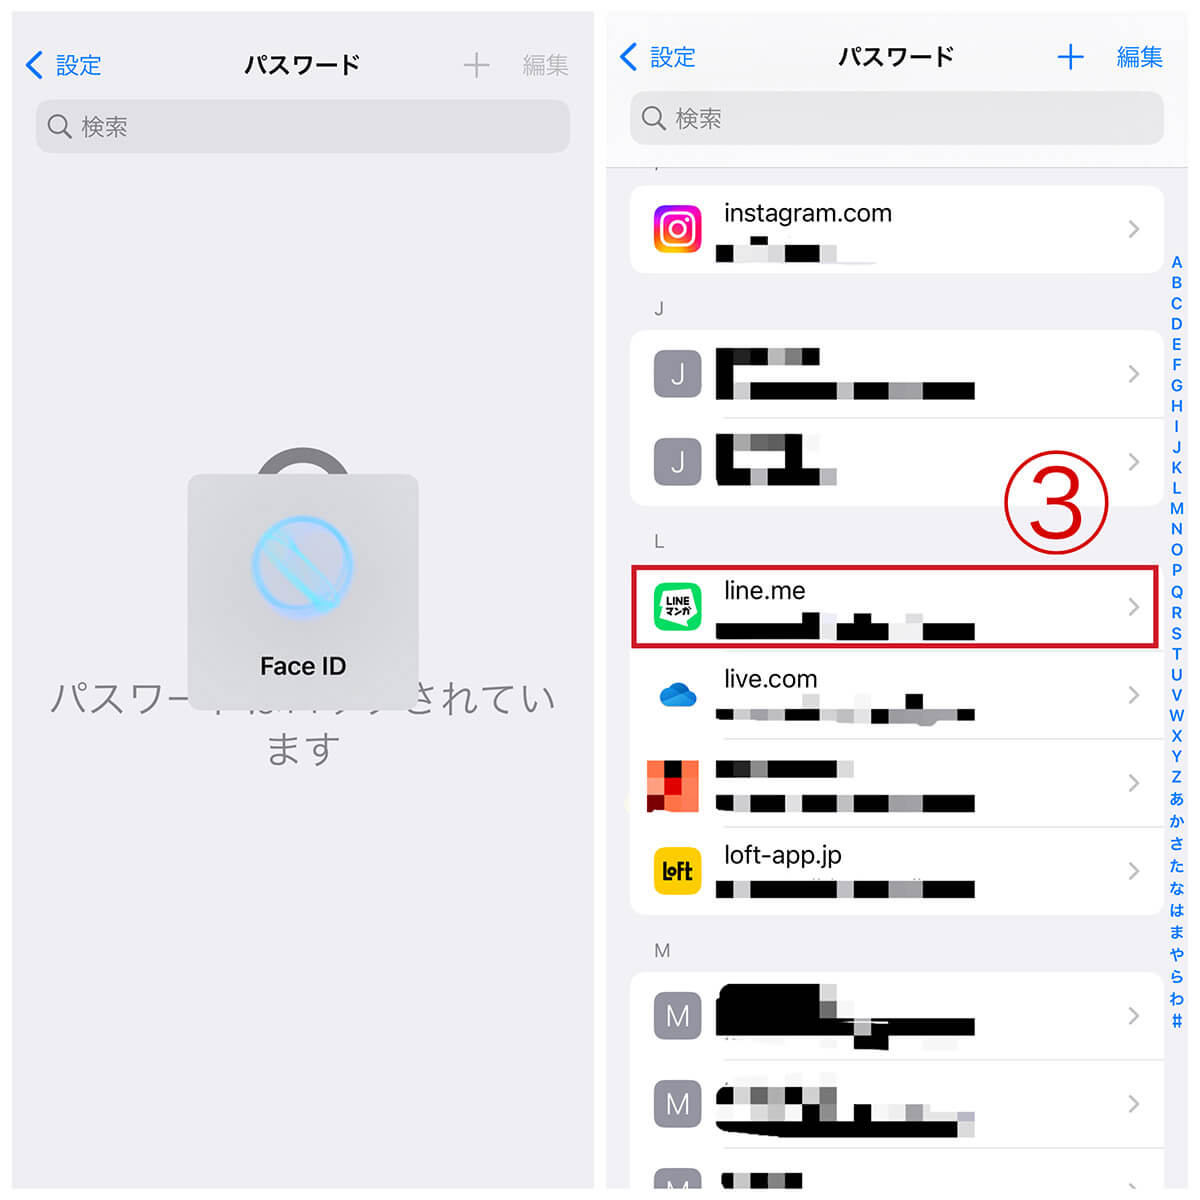 LINEのパスワード確認手順 | iPhone「設定」からパスワードを確認する方法2